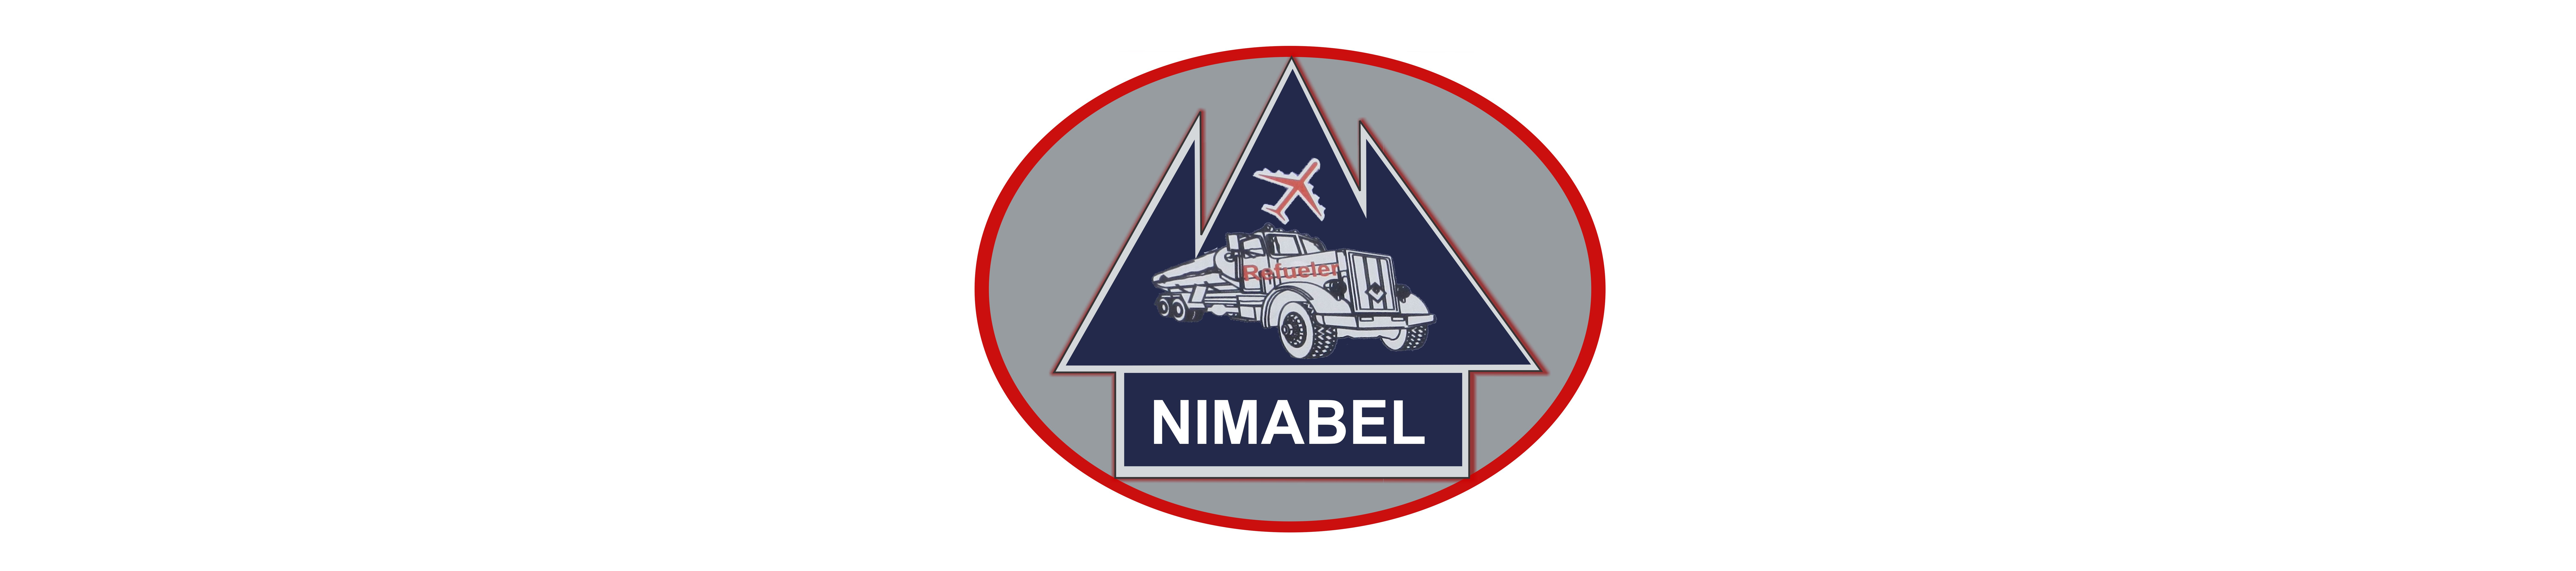 NIMABEL Ventures